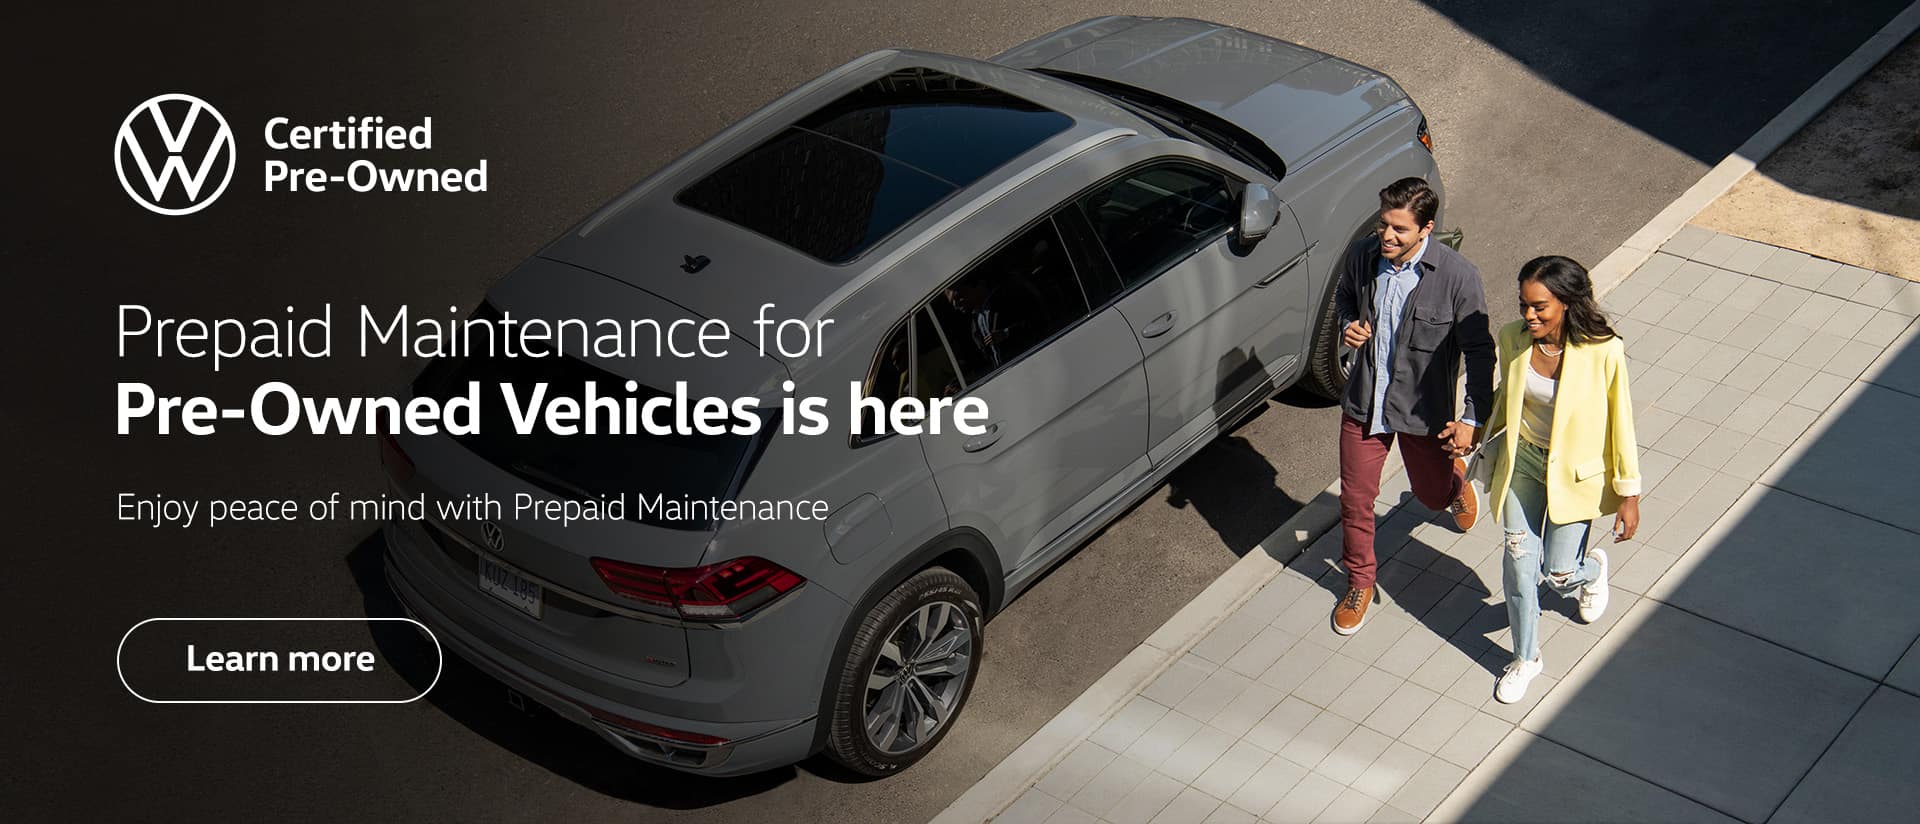 Volkswagen Prepaid Maintenance